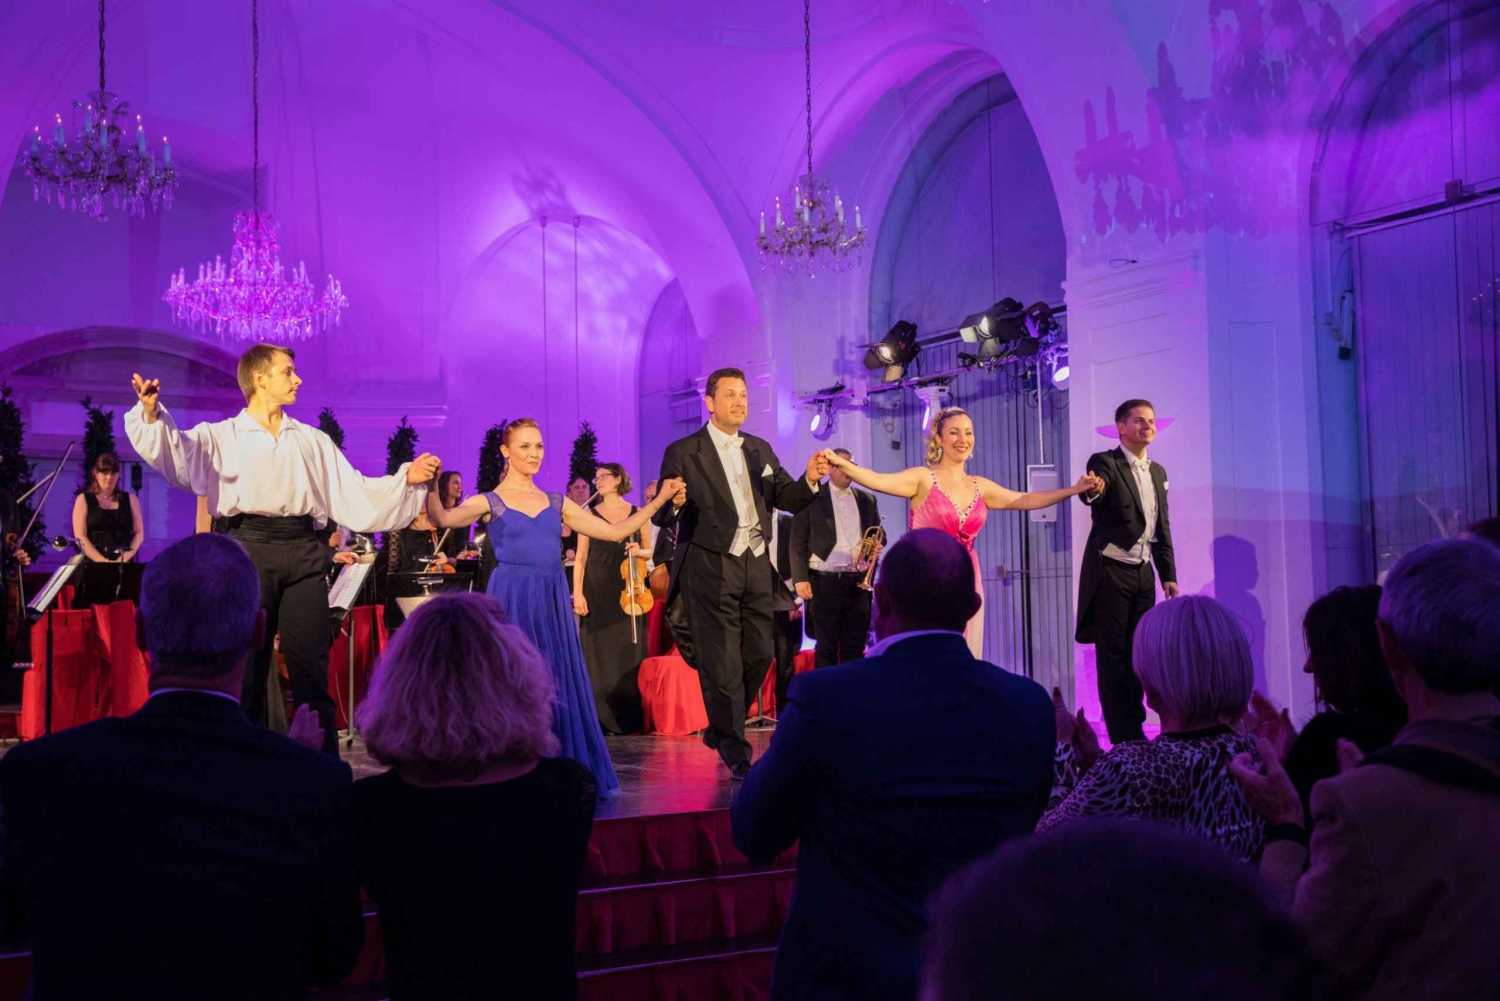 Wenen: avondrondleiding Schloss Schönbrunn, diner en concert